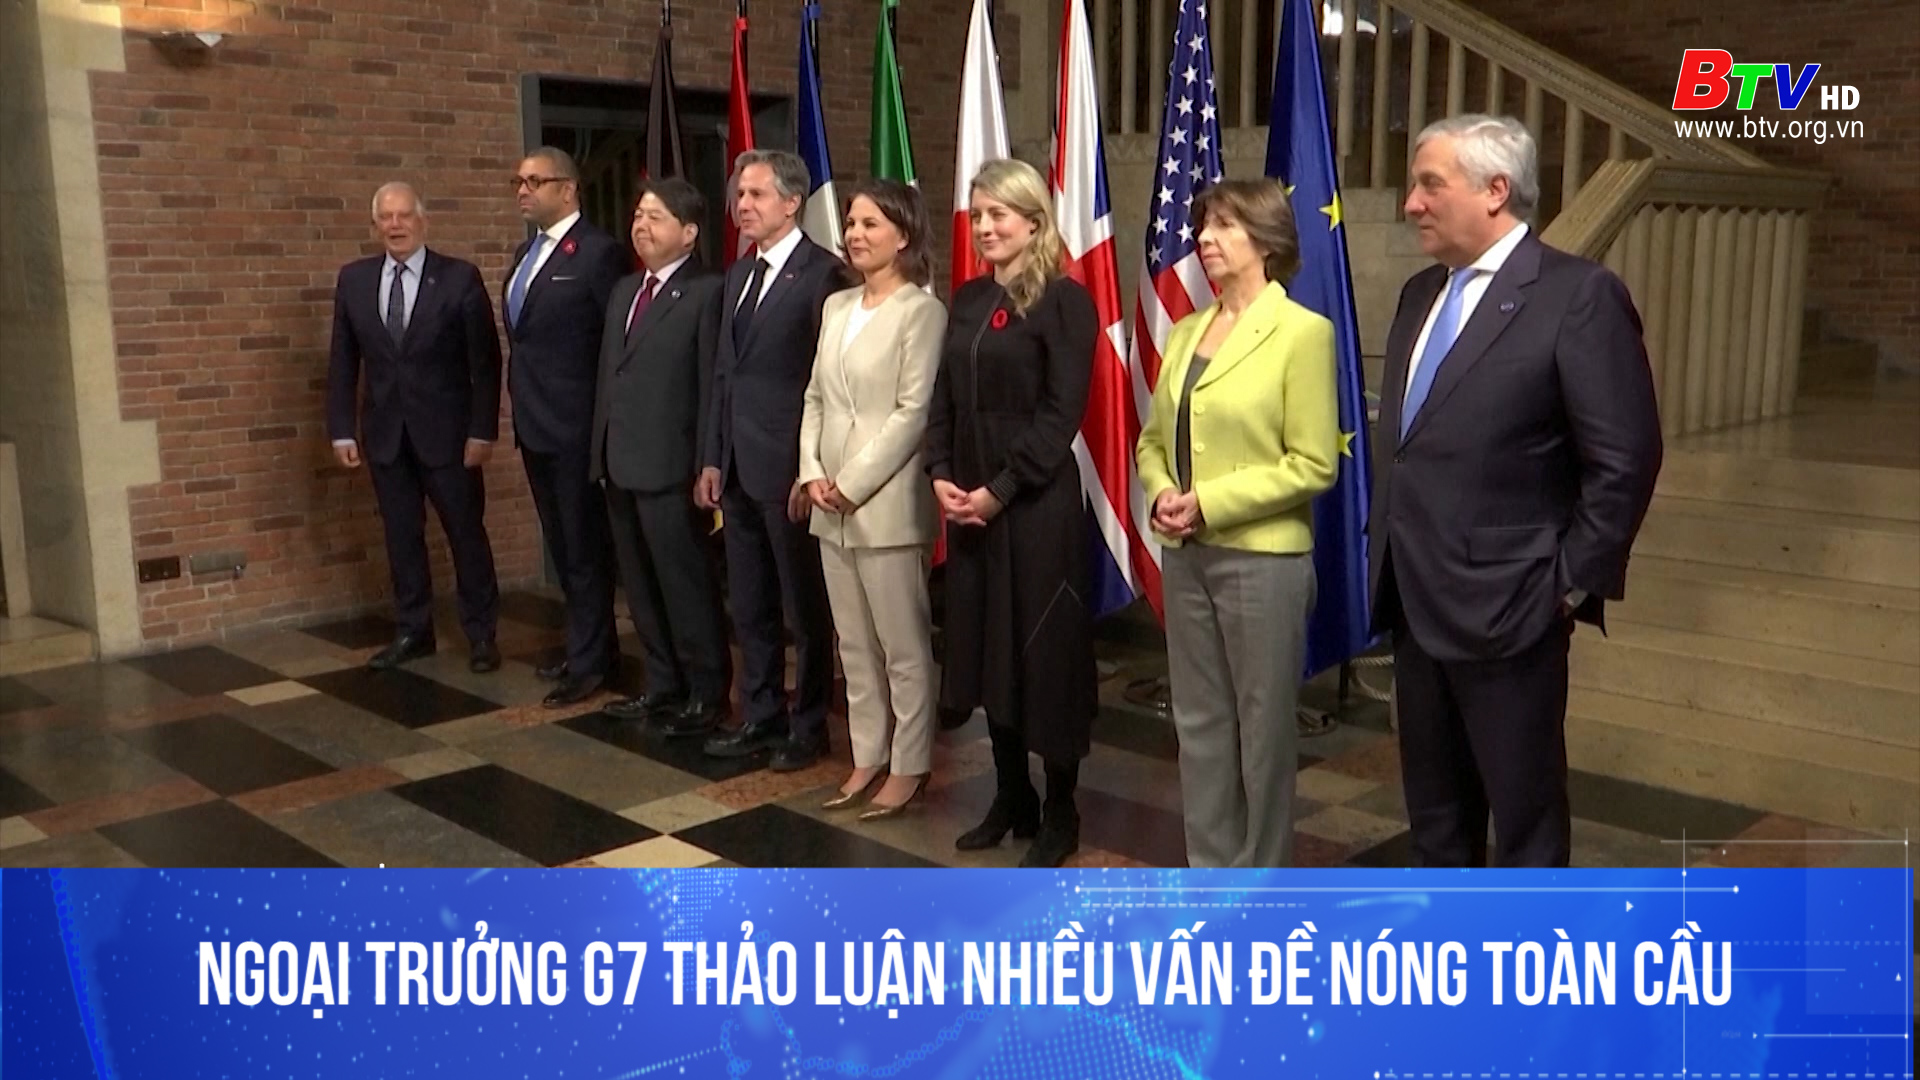 Ngoại trưởng G7 thảo luận nhiều vấn đề nóng toàn cầu